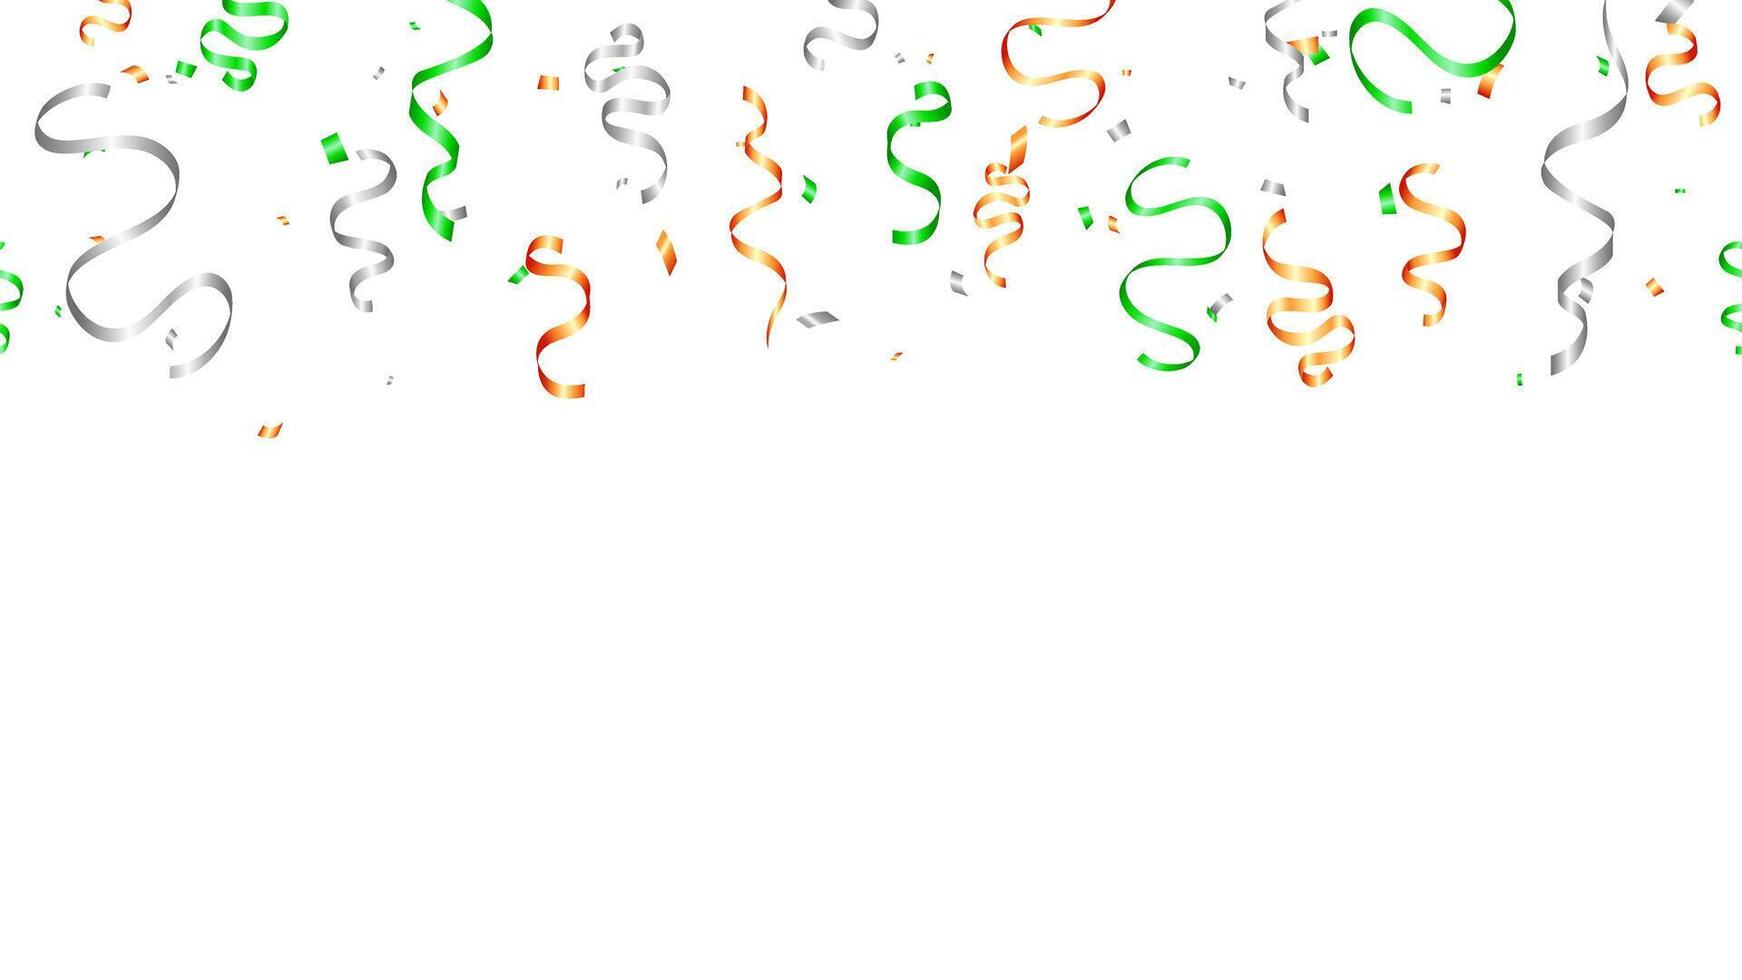 banier oranje, groente, zilver kleuren lint en confetti met st. patricks dag partij uitnodiging ontwerp vector